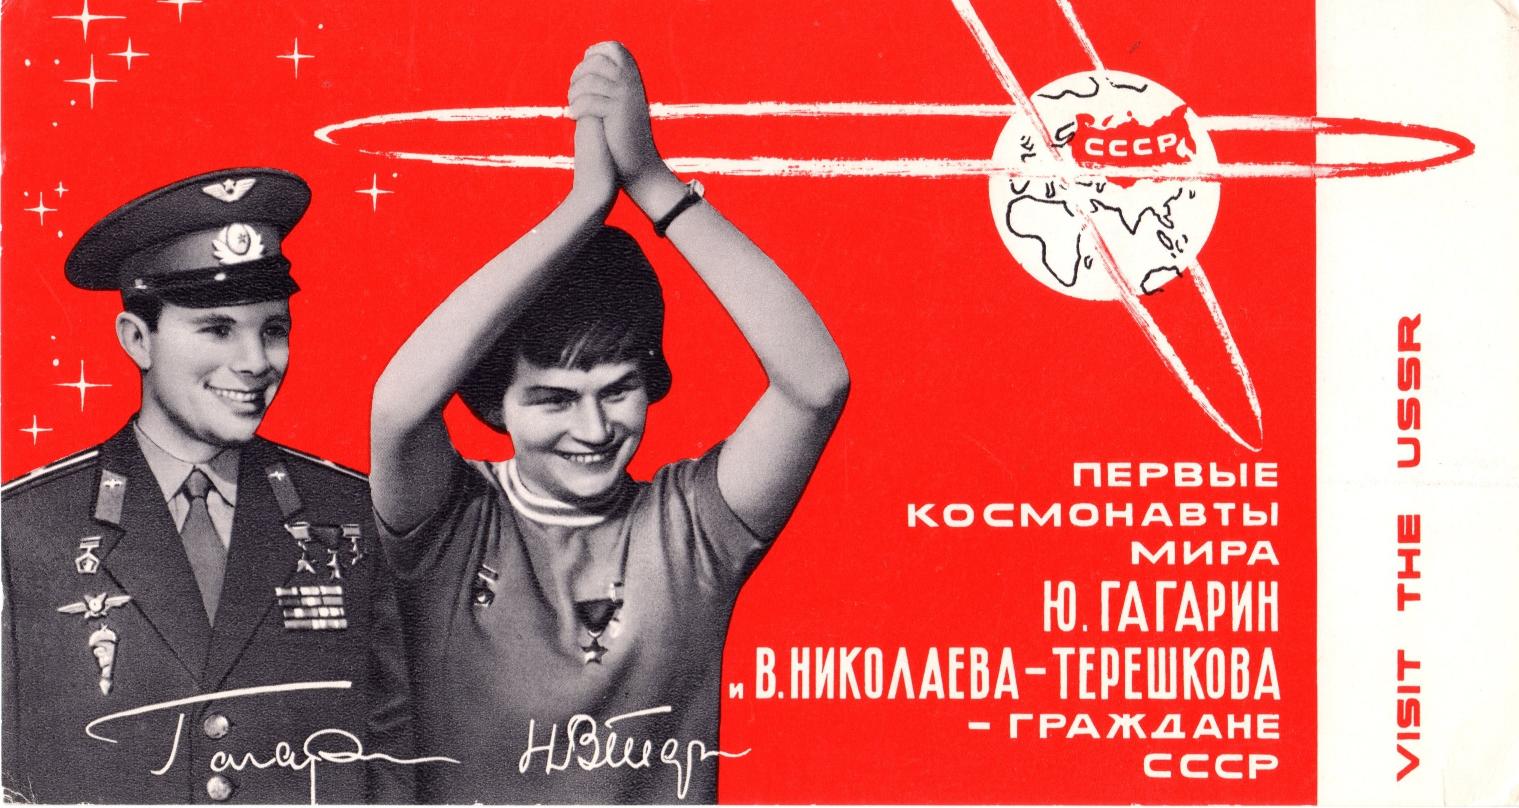 Il y a 55 ans, Valentina Terechkova - 2. Le vol et la portée médiatique